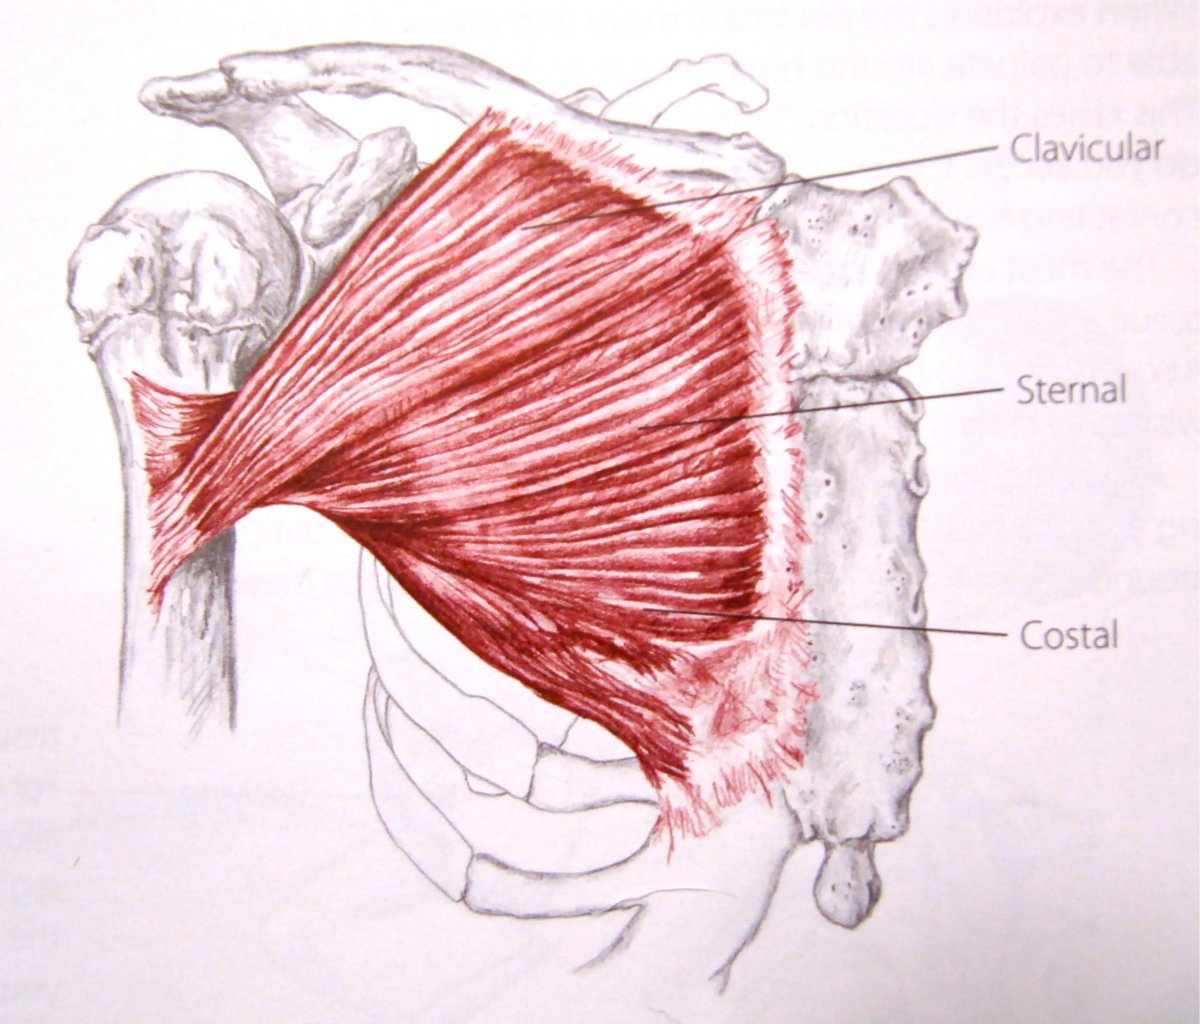 Мышца квадрицепс бедра анатомия